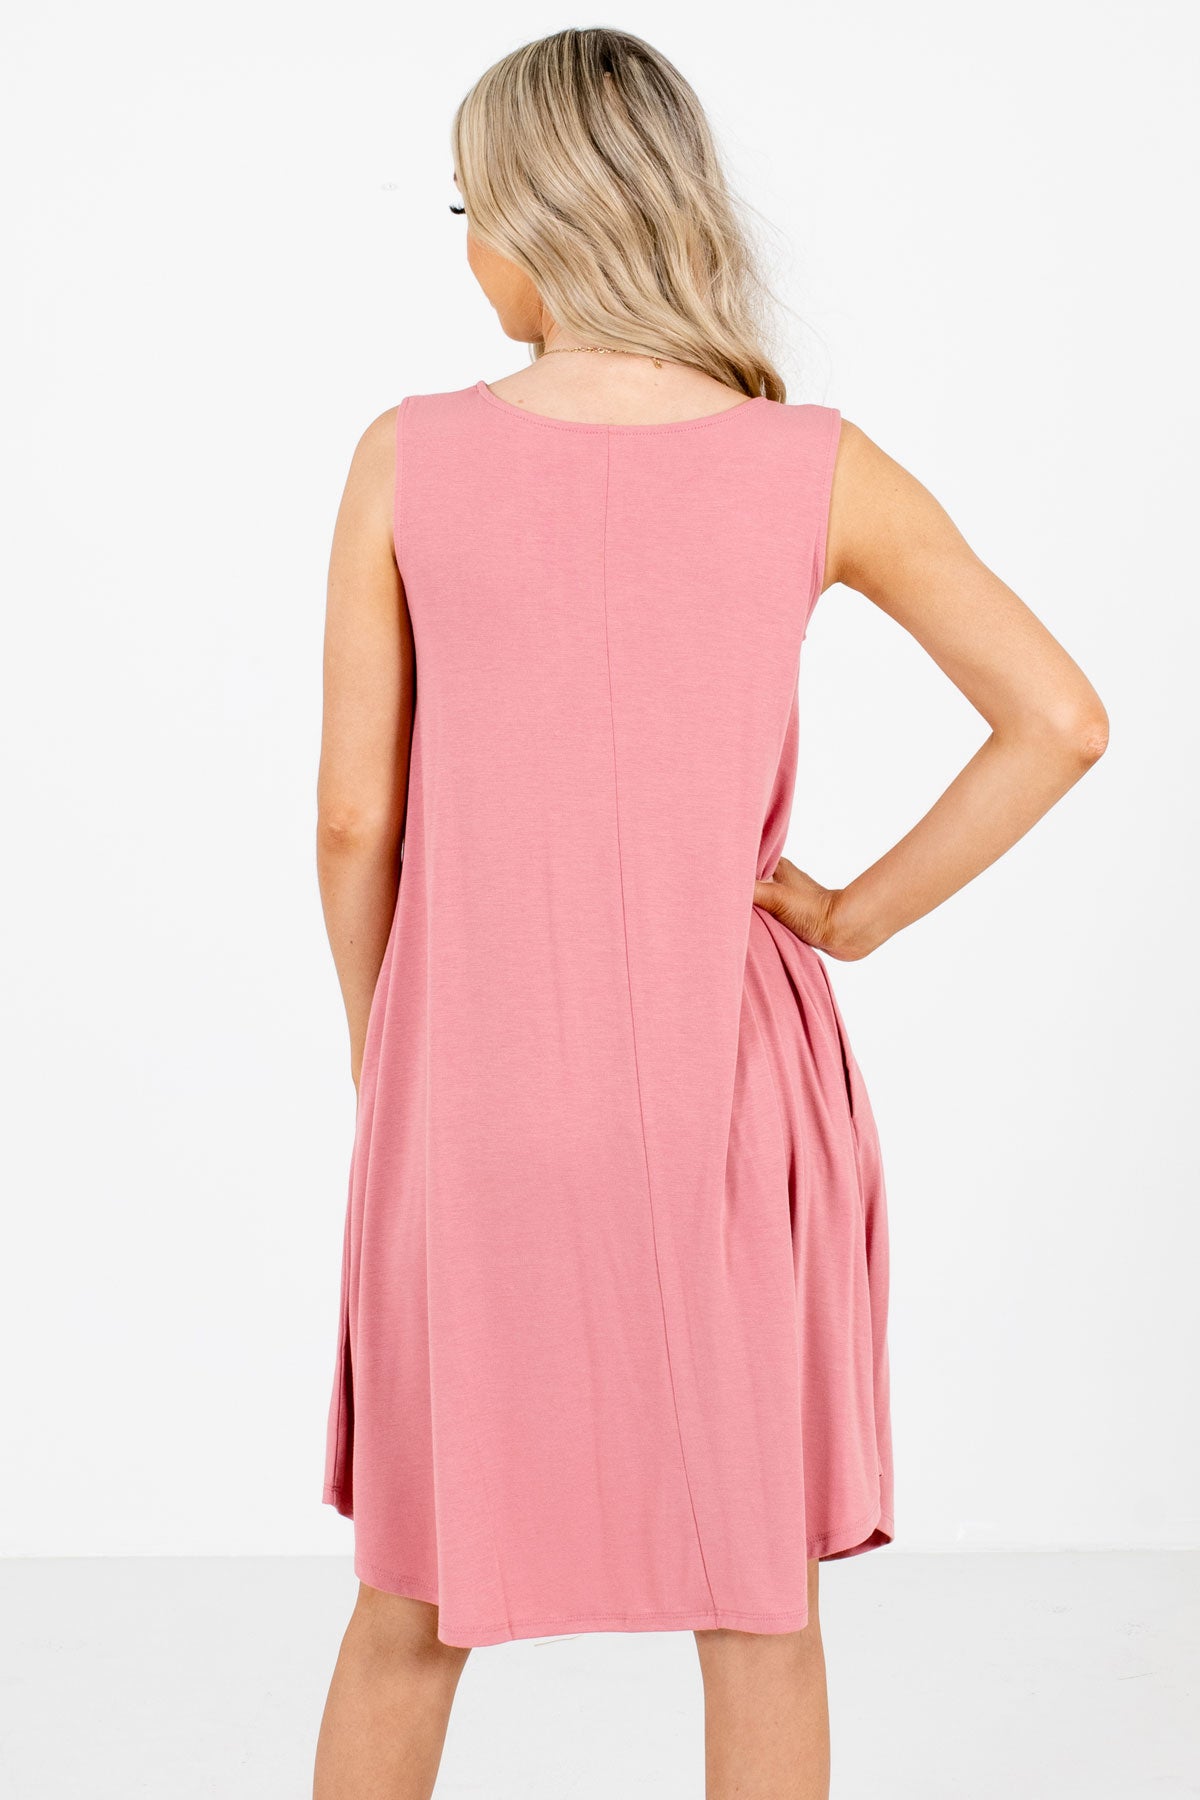 Women's Pink Round Neckline Boutique Knee-Length Dress